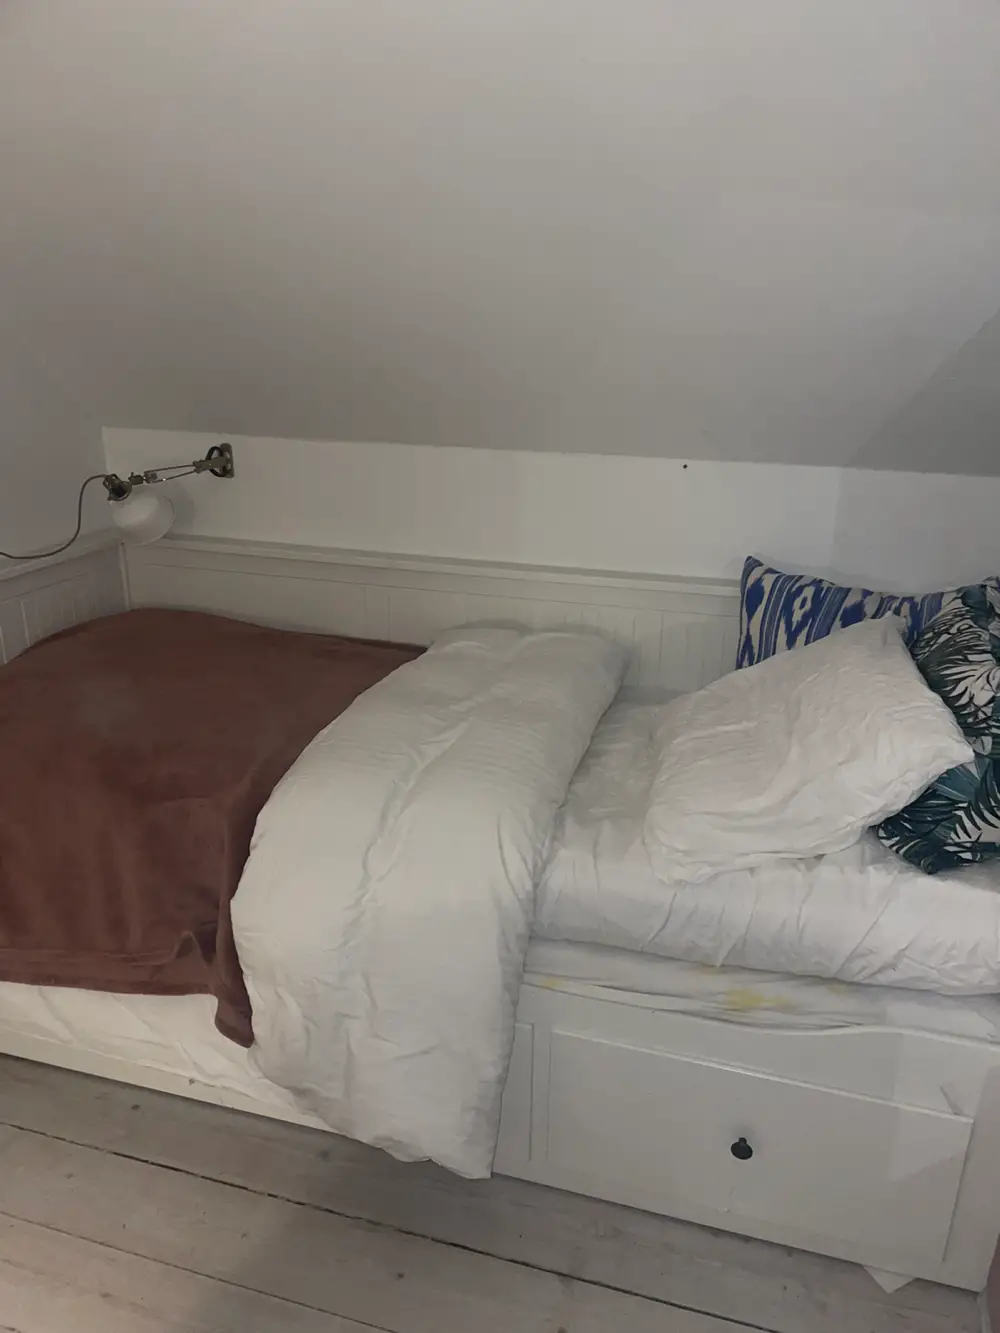 Køb Ikea Hemnes seng af Katrine De på Reshopper · Shop secondhand børn, mor og bolig